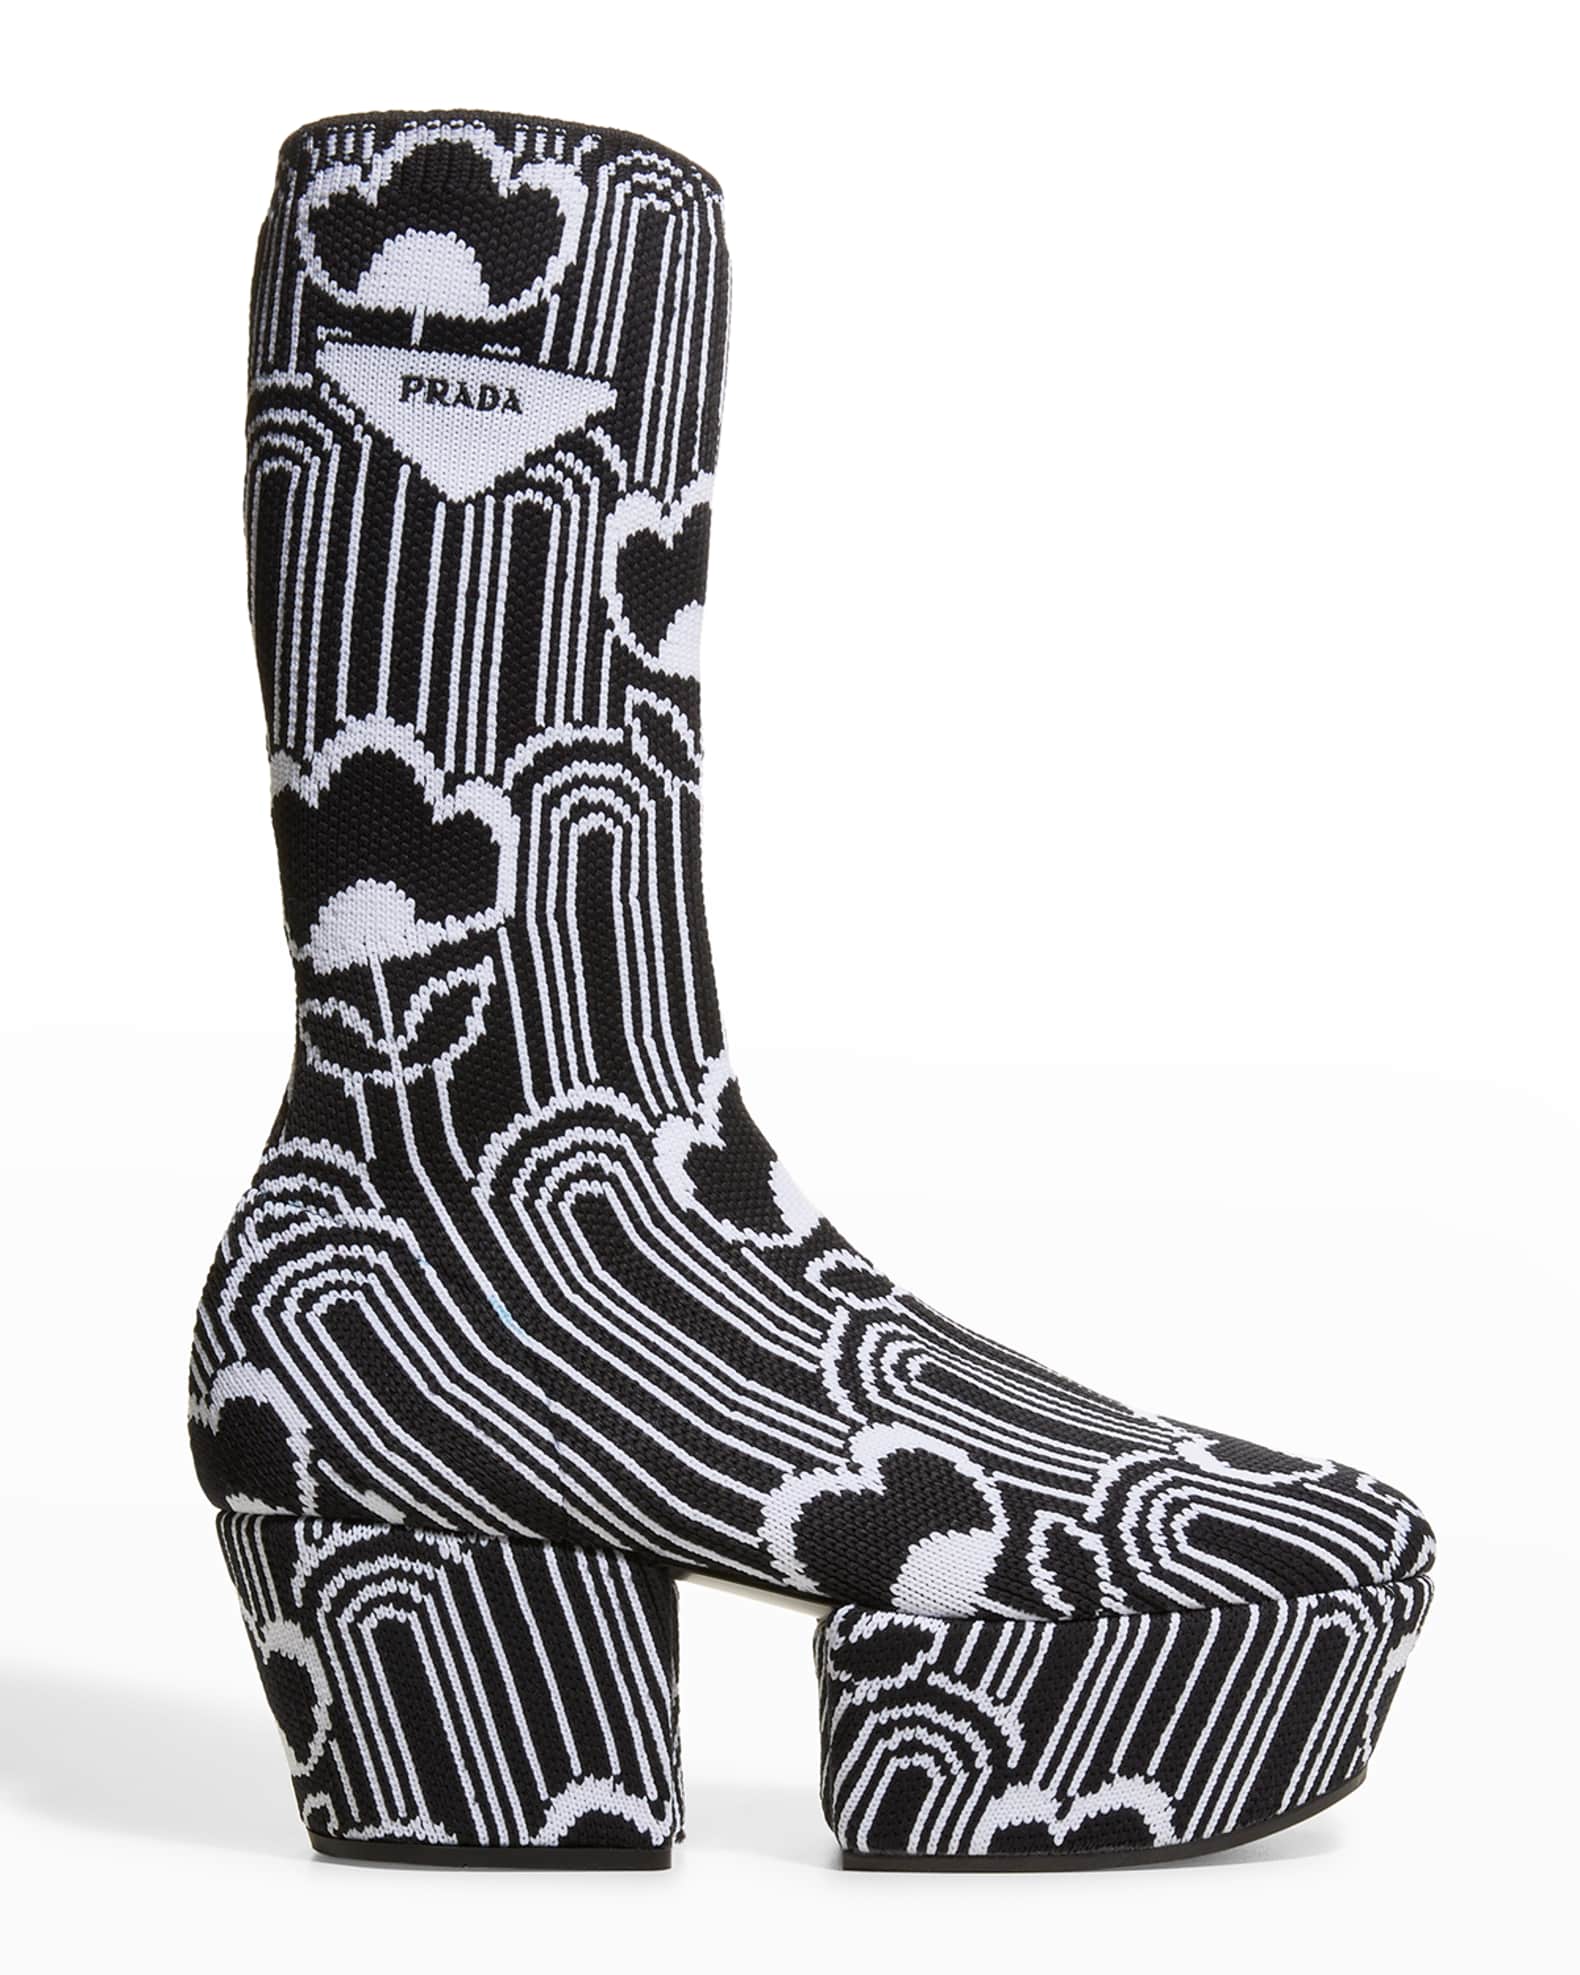 Prada Floral Jacquard Knit Platform Booties Neiman Marcus